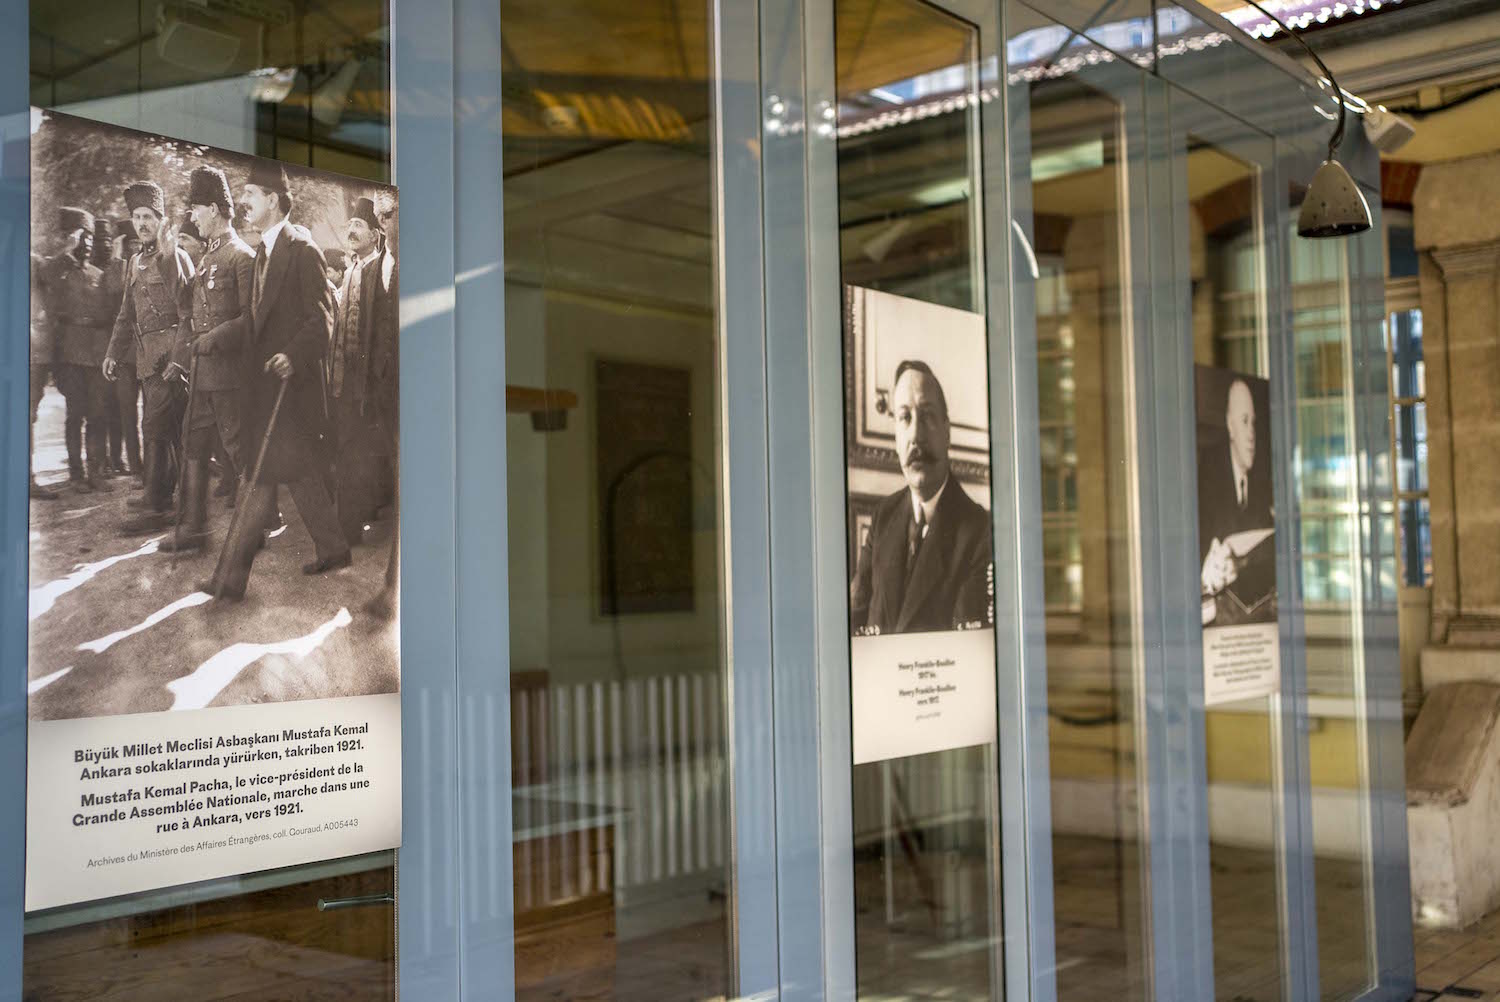 Dans l’institut, le Bistrot français est fermé depuis mars 2020 et le coronavirus. Des photos de l’histoire turque sont affichées sur les murs.